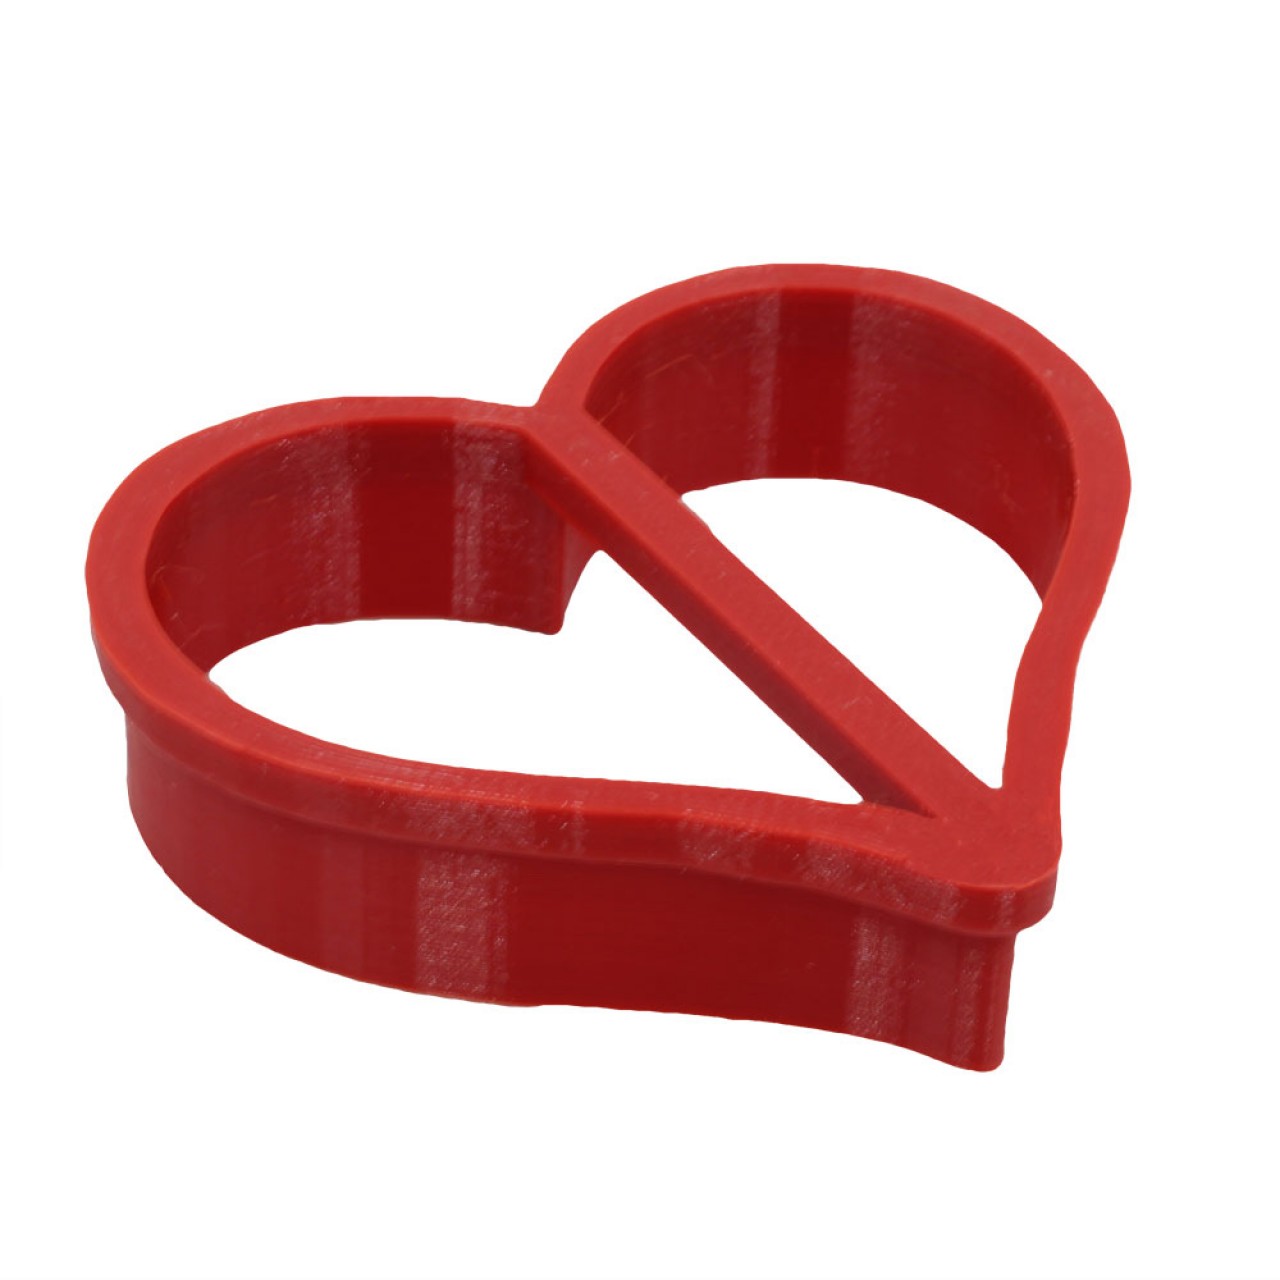 Κόκκινο Πλαστικό Κουπ Πατ Σε Σχήμα Καρδιάς 78 x 70mm